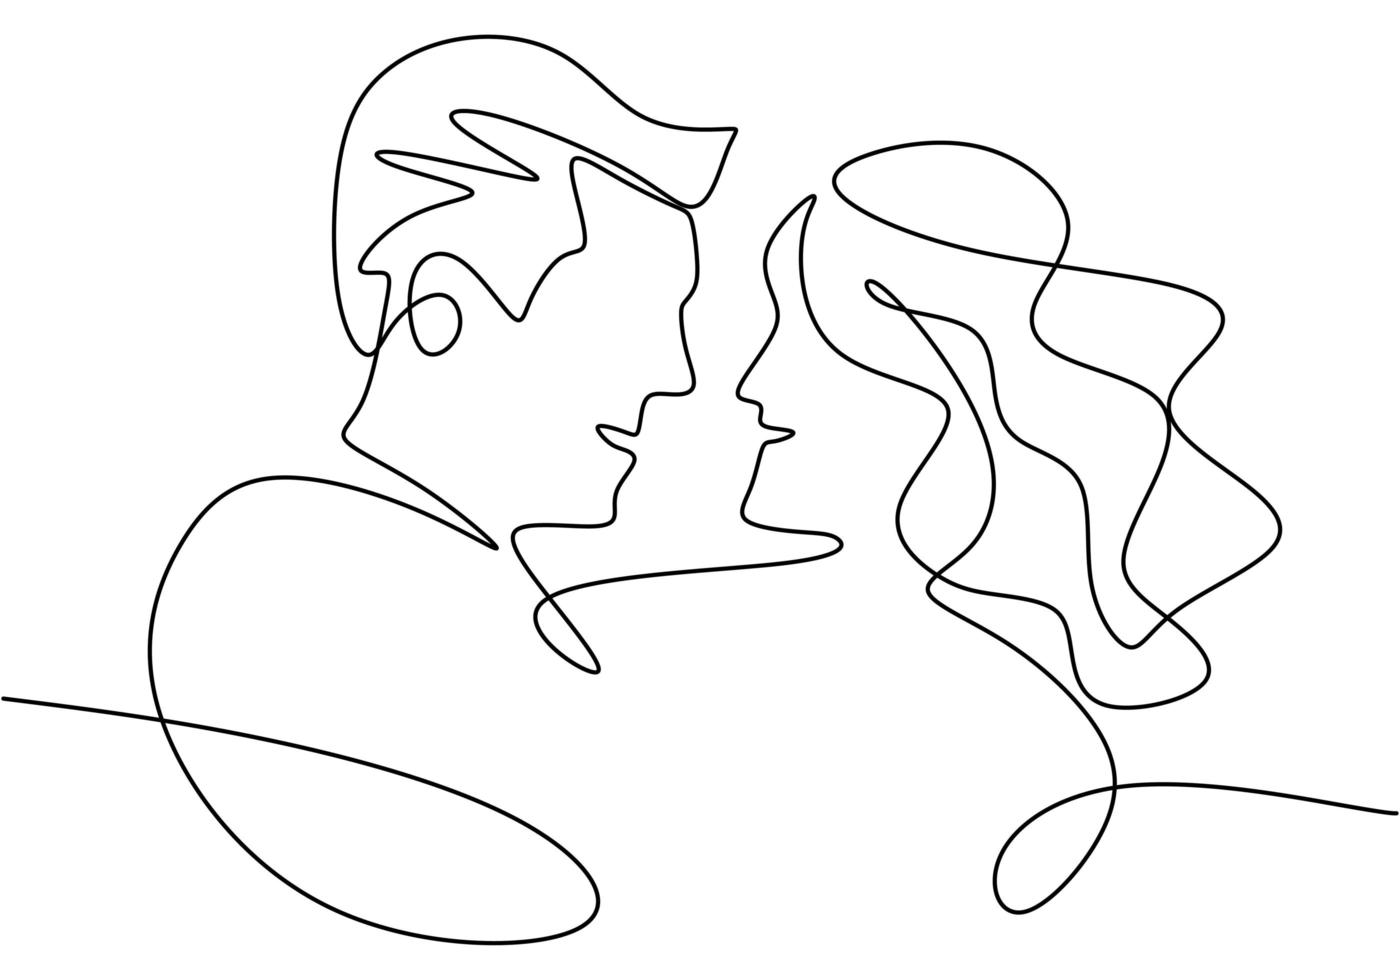 dibujo de línea continua. retrato de pareja romántica. diseño de concepto de tema de amantes. minimalismo dibujado a mano. vector